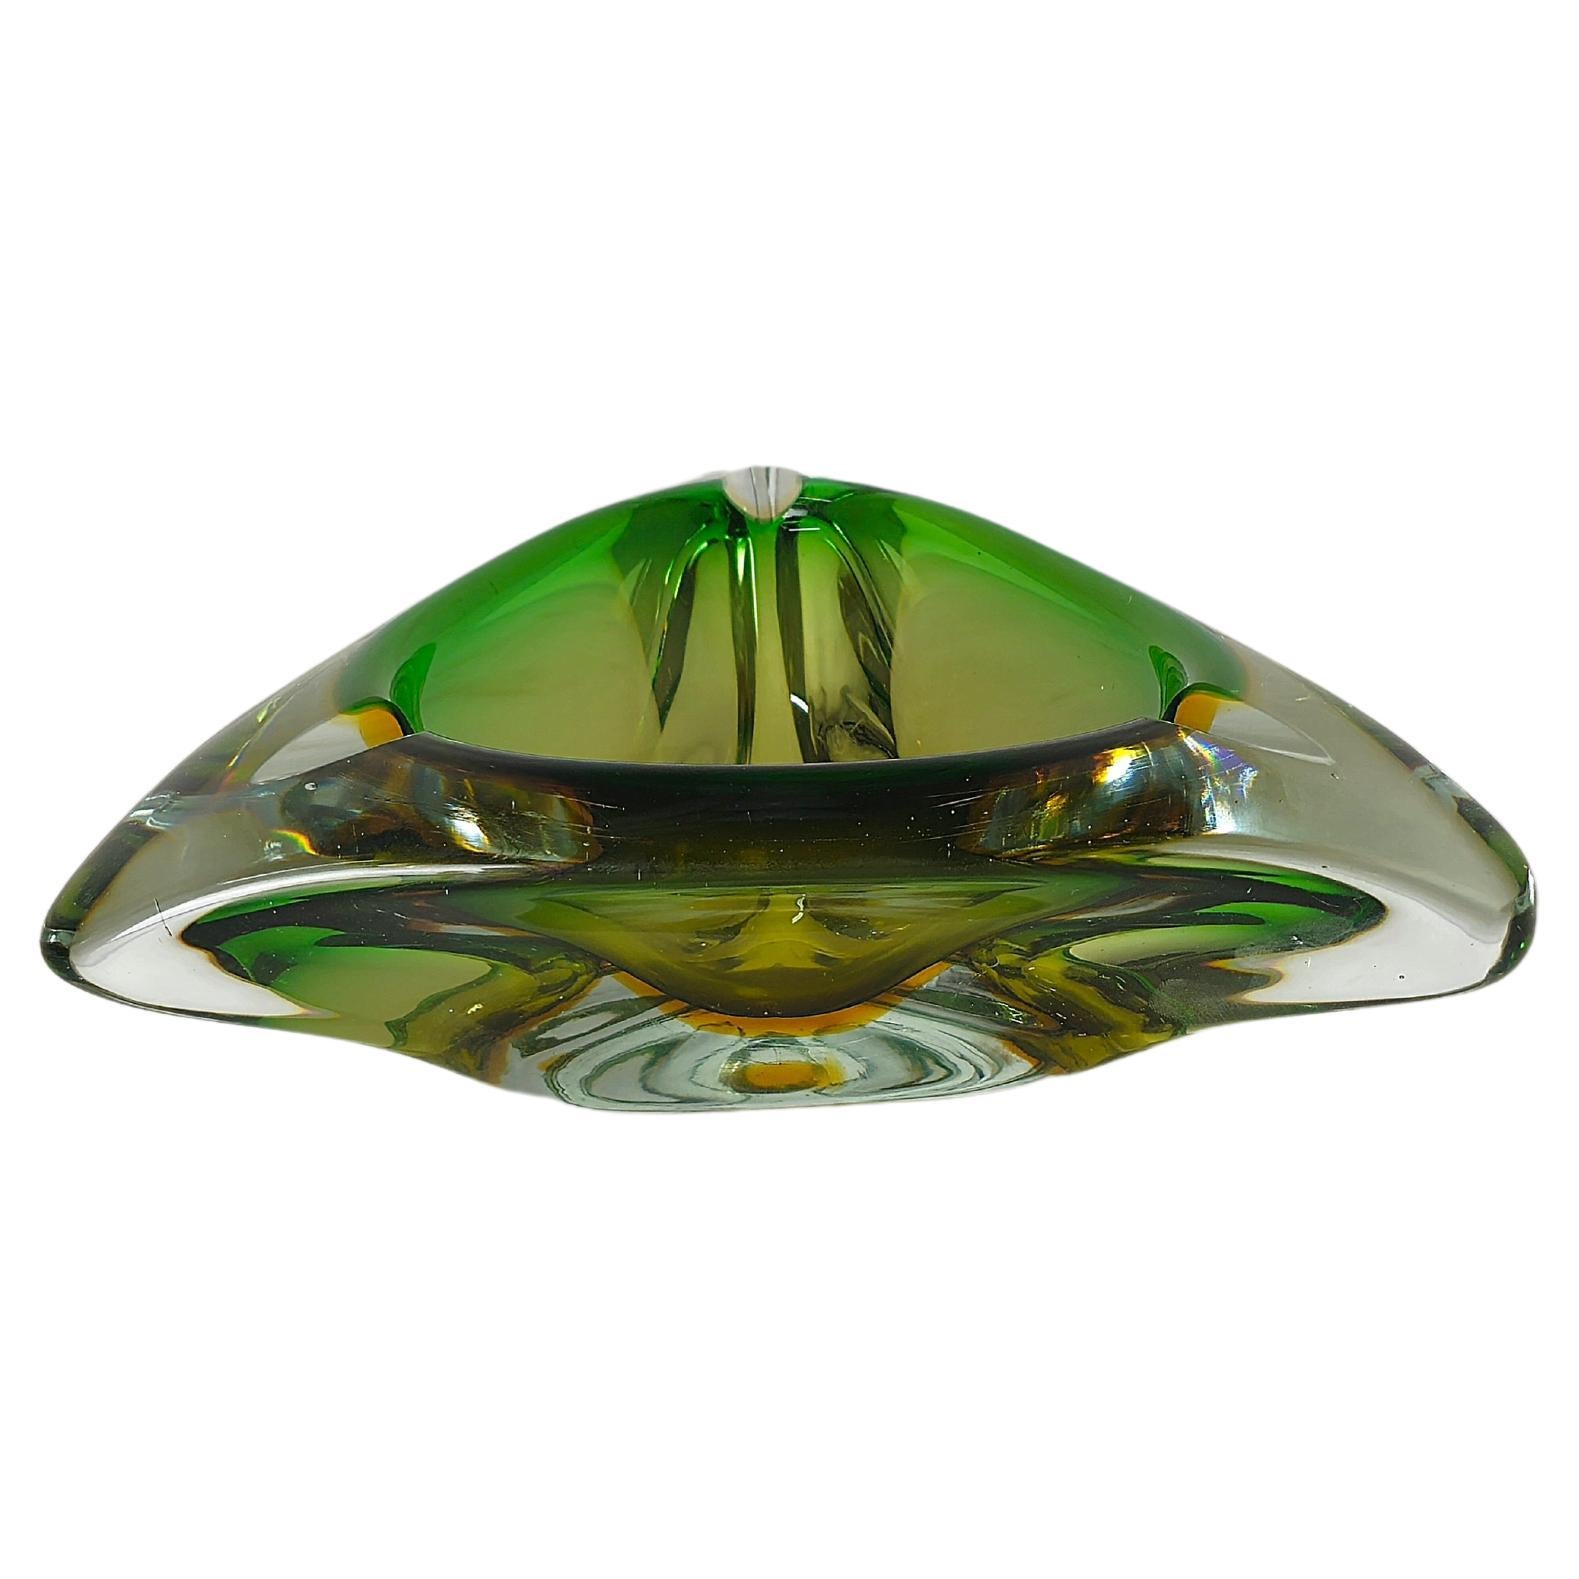 Cendrier Murano Glass Sommerso Transparent Vert Midcentury Italian Design 1970s